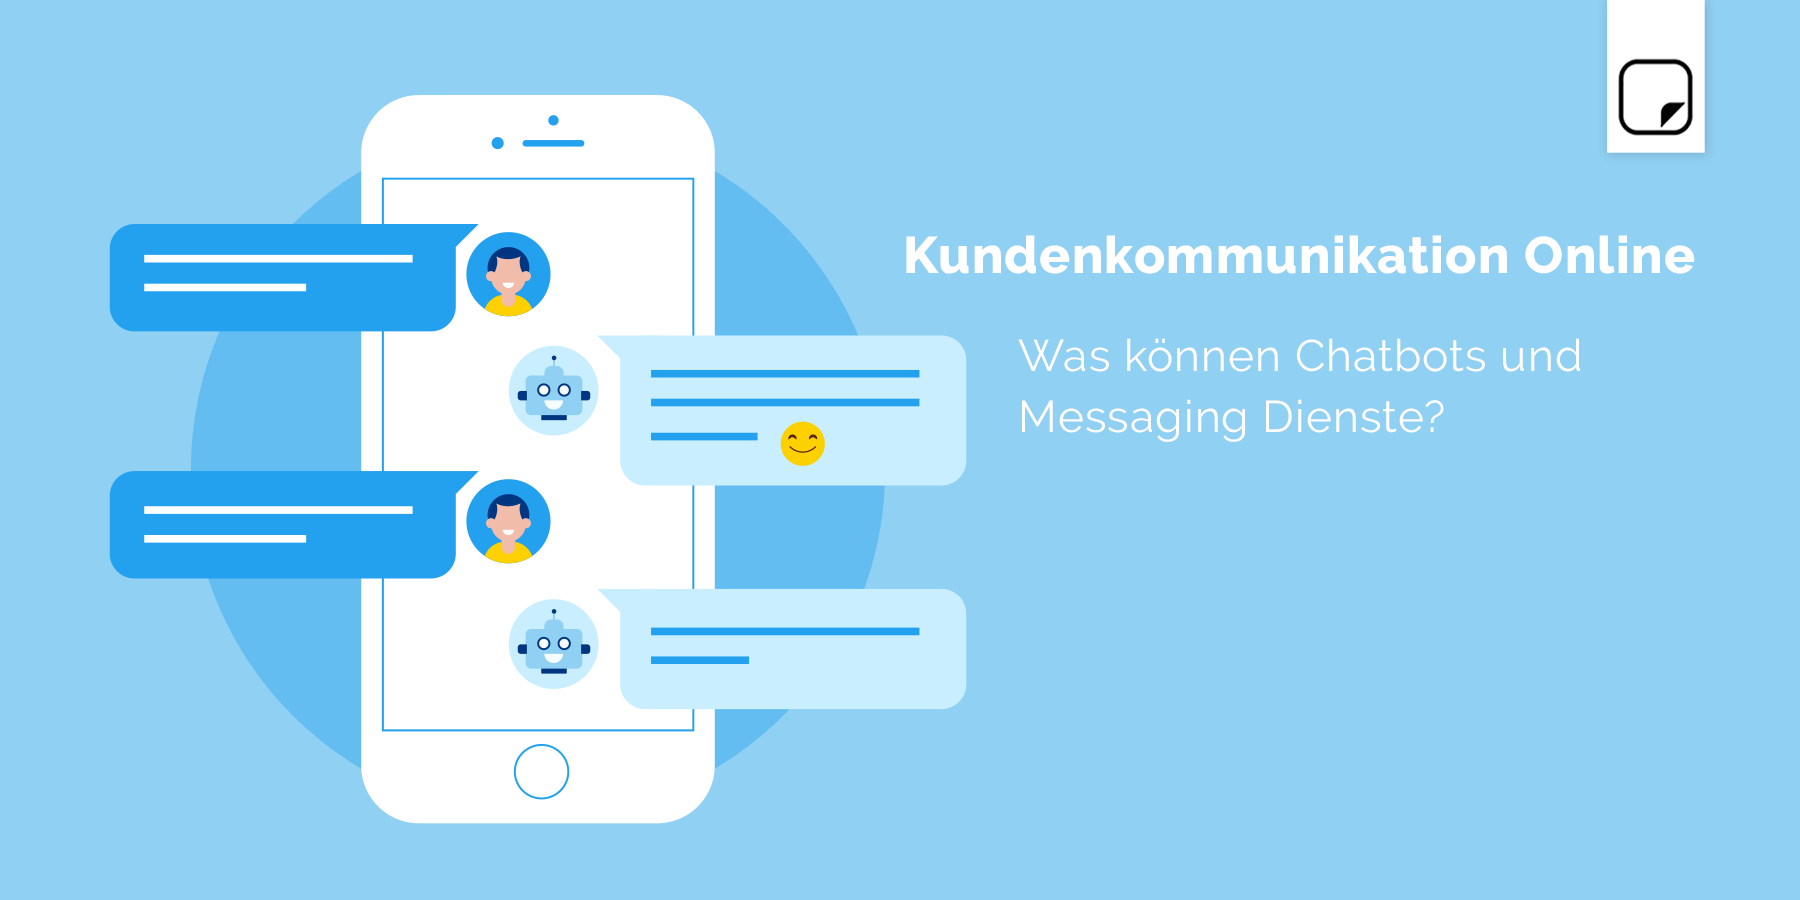 Kundenkommunikation Online: Was können Chatbots und Messaging Dienste?